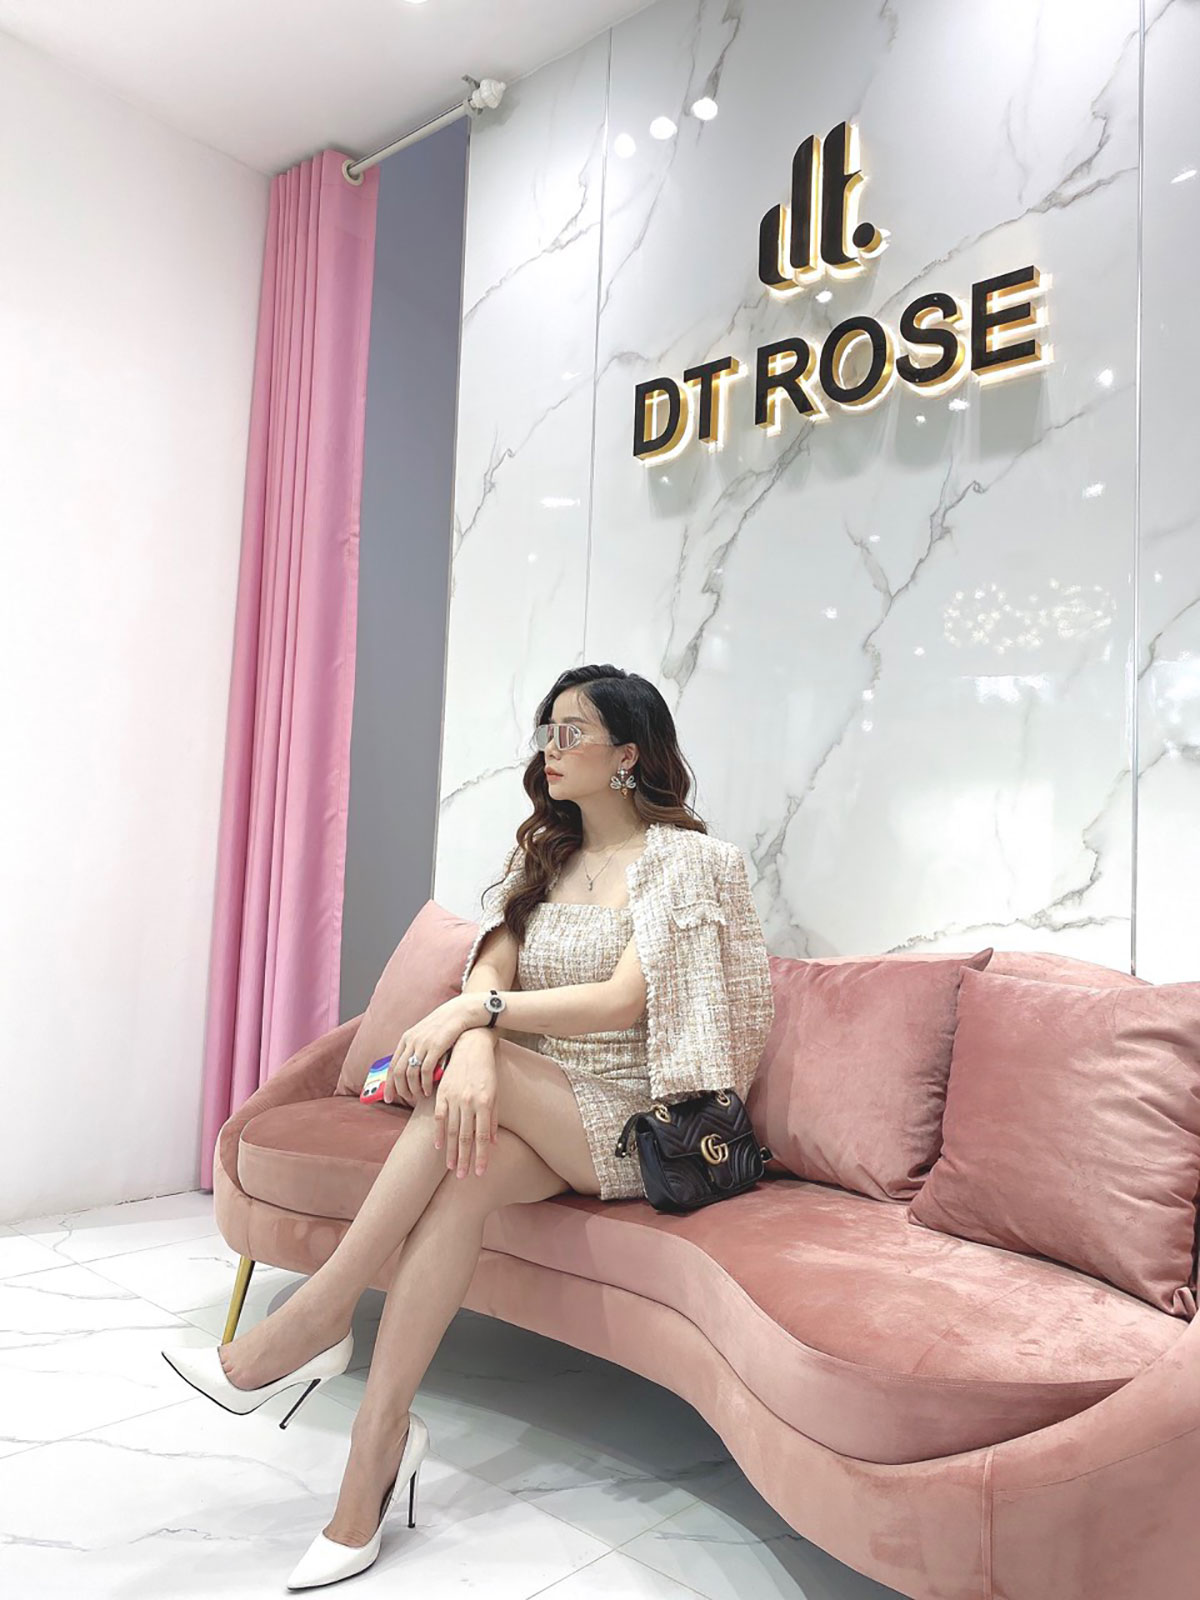 DT Rose - thương hiệu thời trang thiết kế cao cấp, nổi tiếng dành cho quý cô sang chảnh